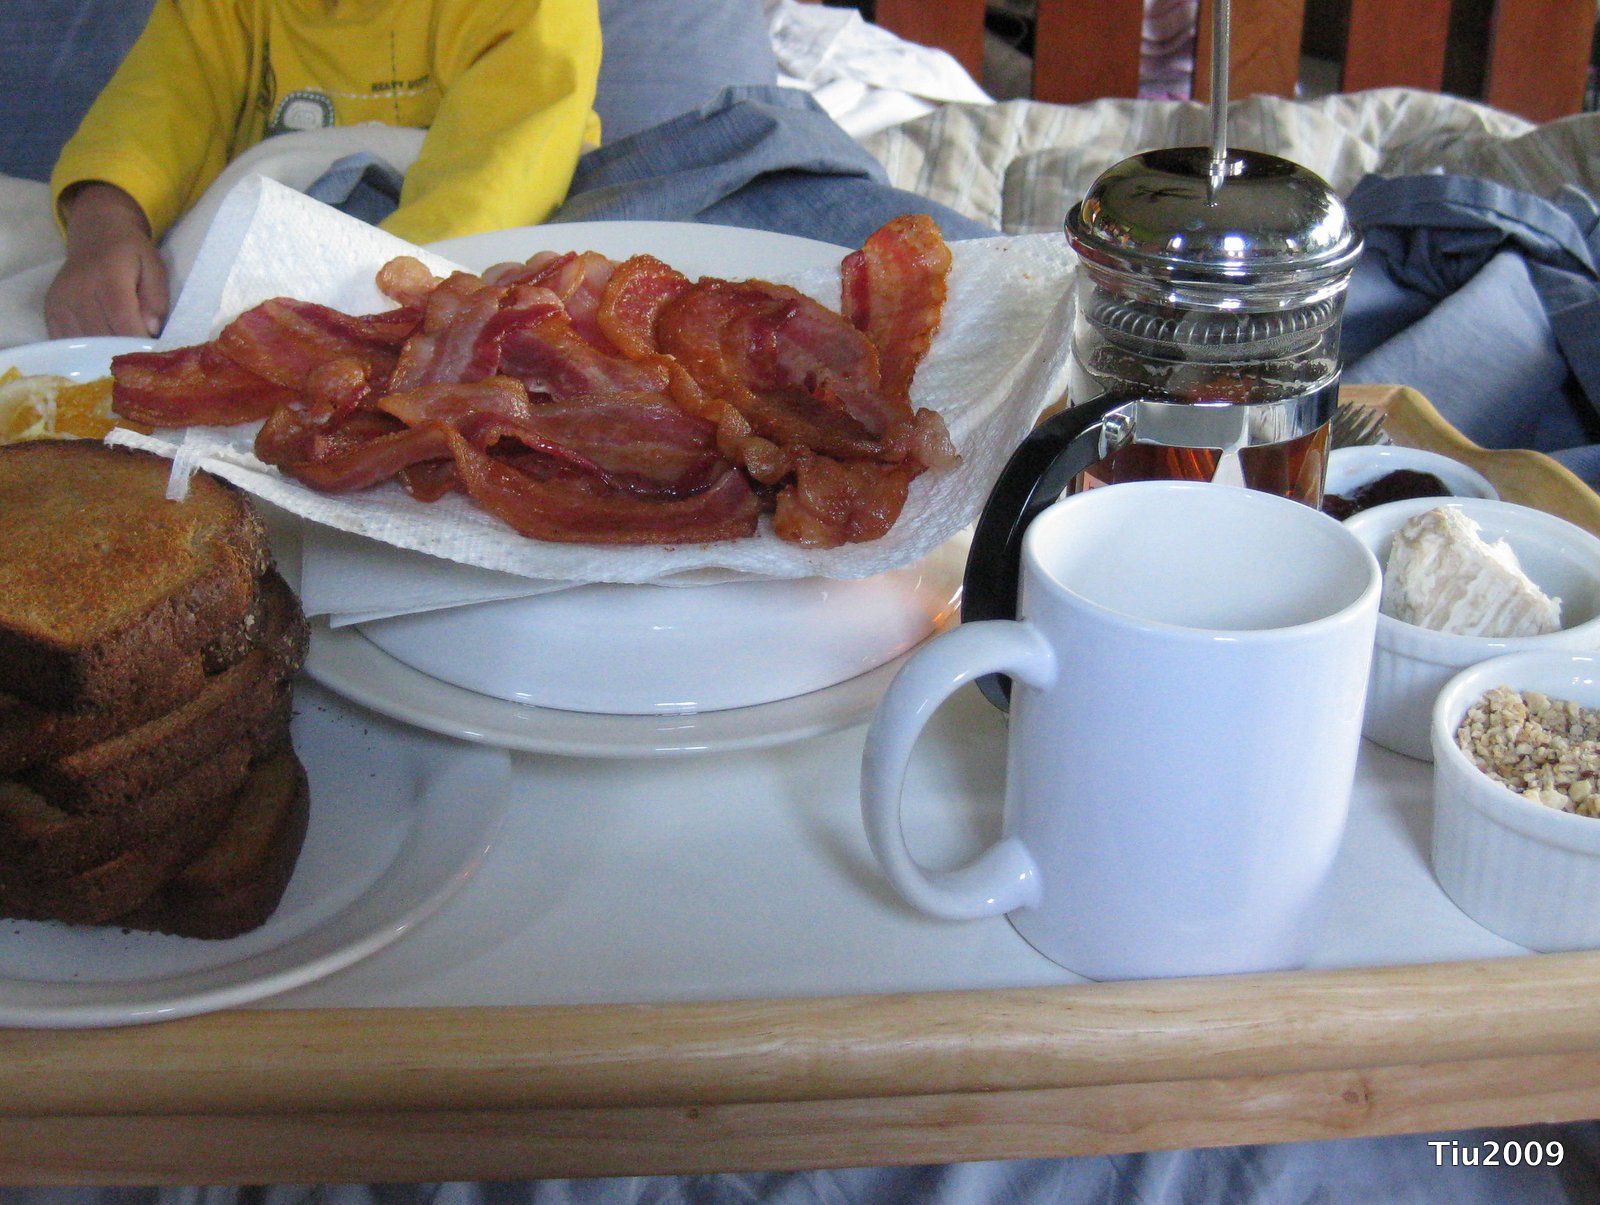 Breakfast in Bed...mmm, Bacon